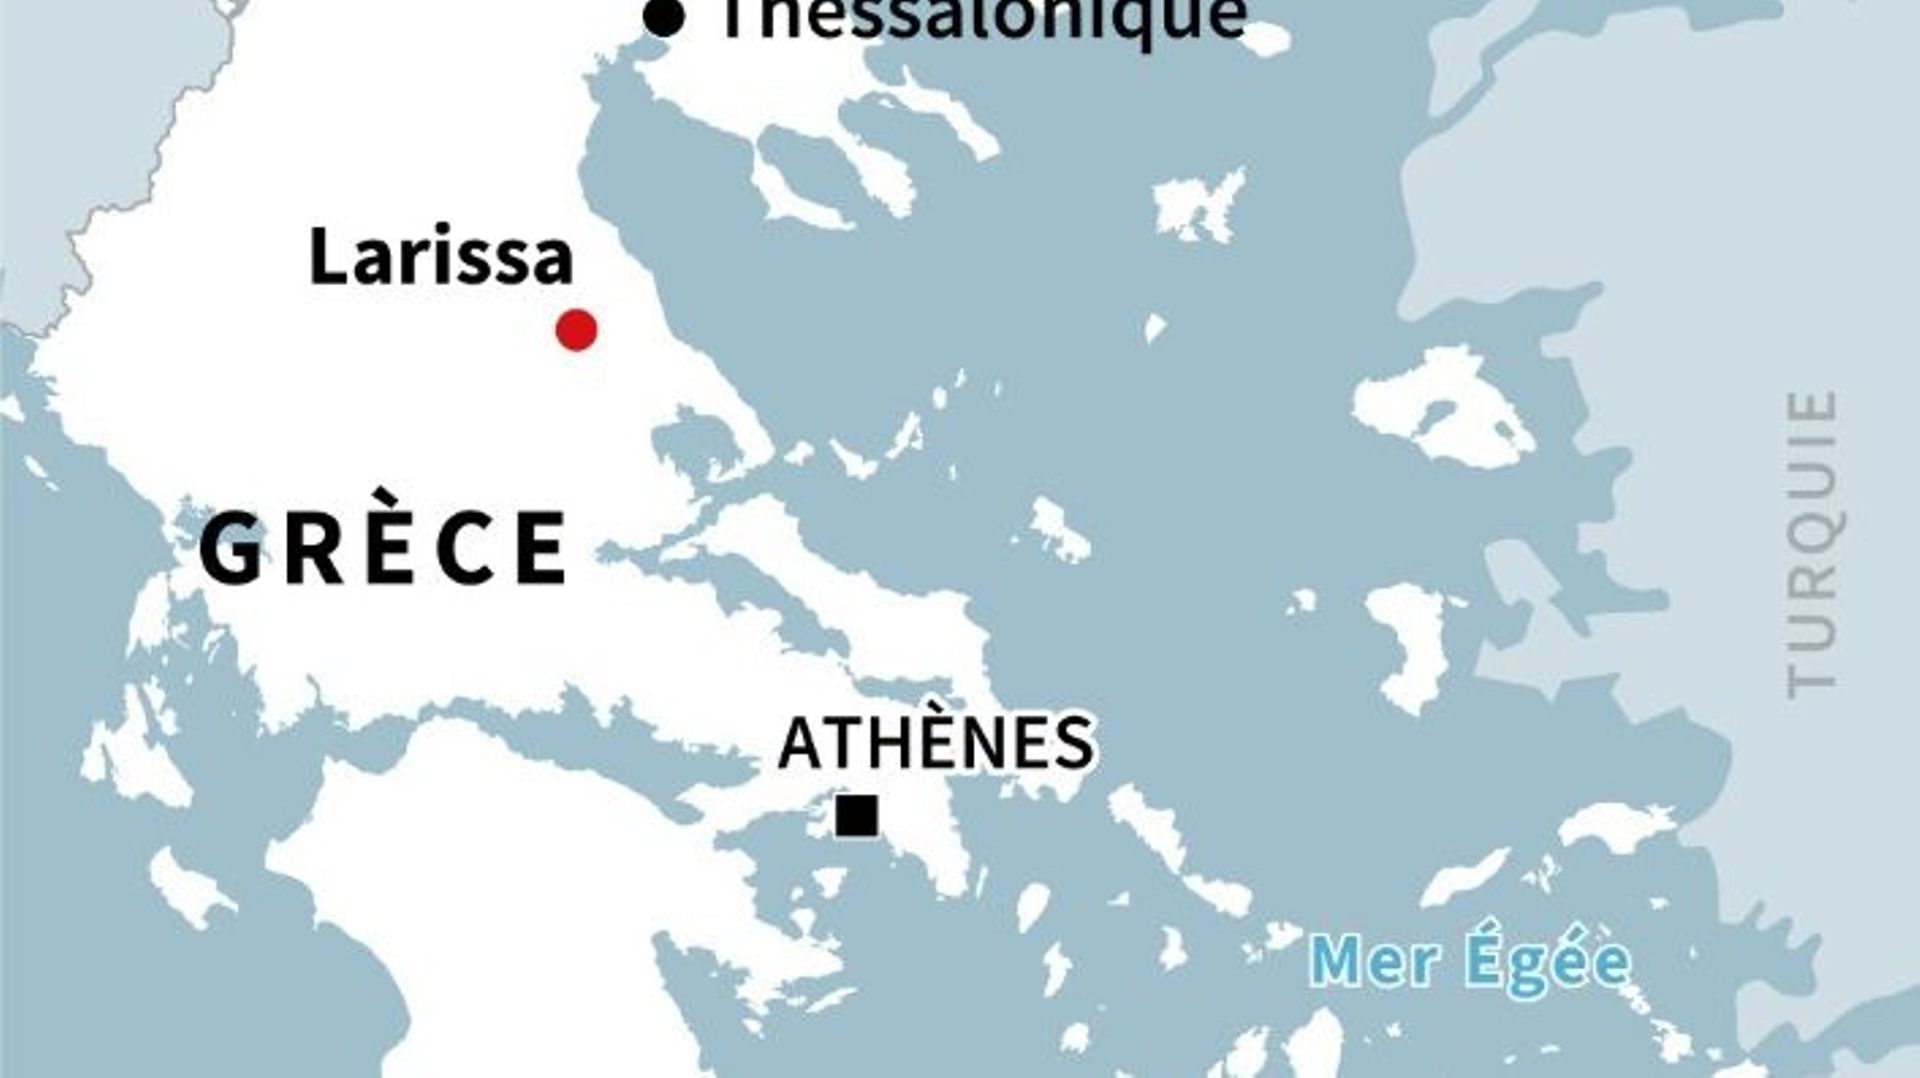 La collision entre deux trains s’est produite à Larissa, dans le centre de la Grèce